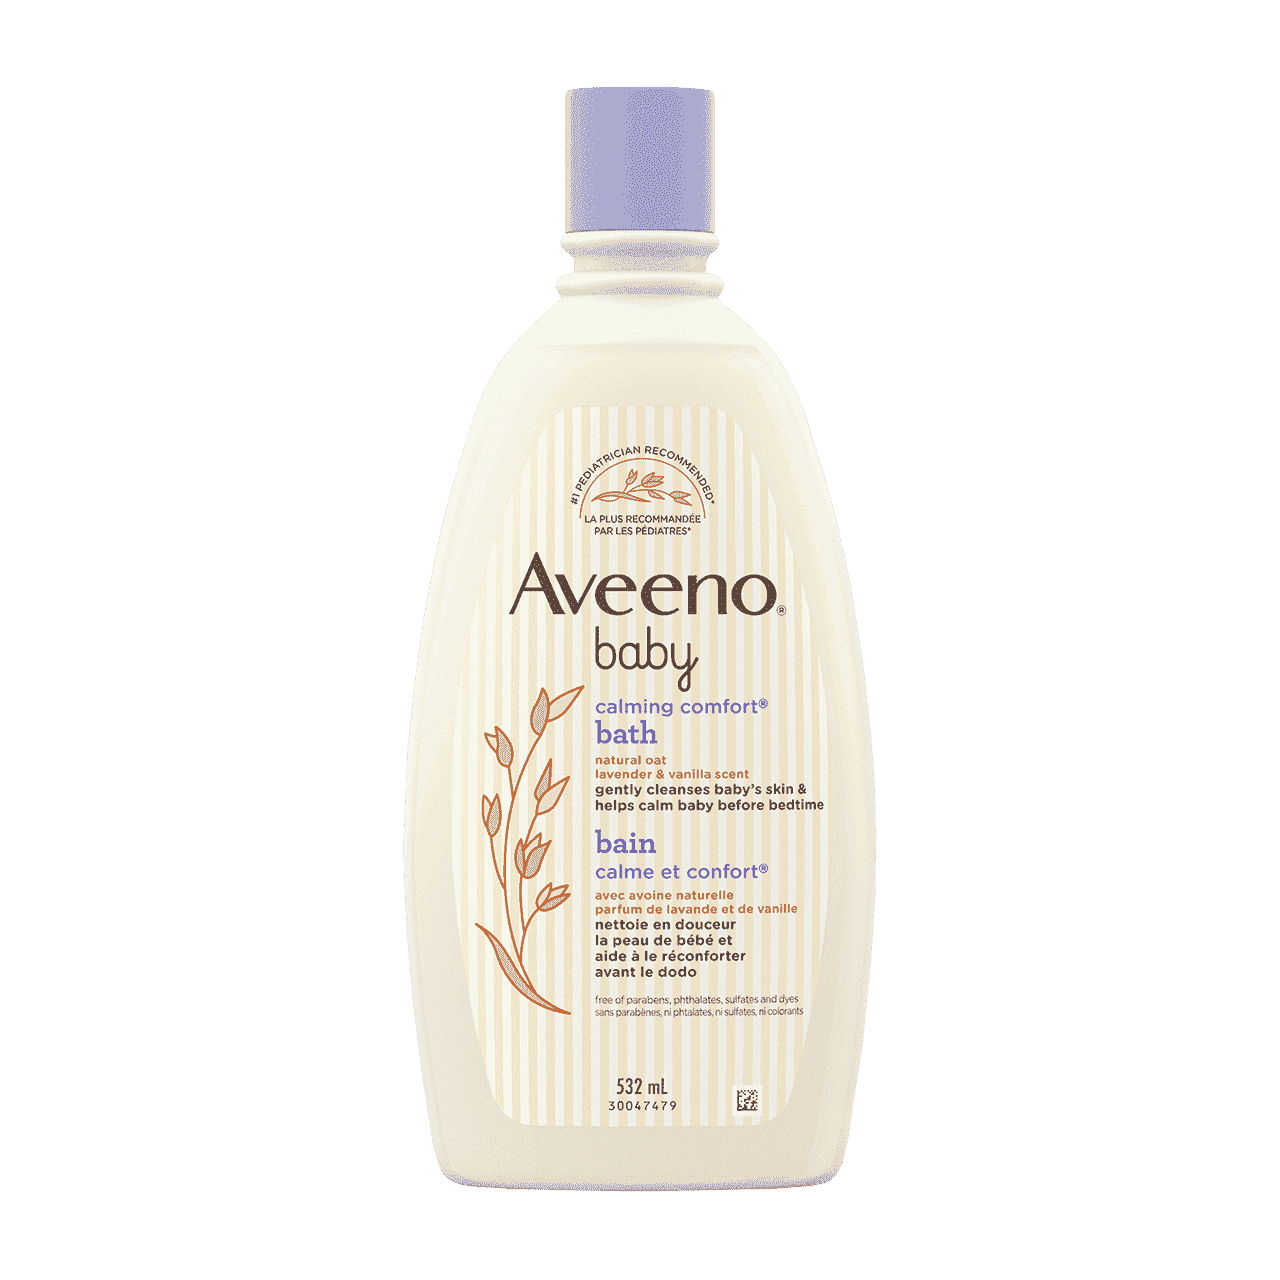 532ml bottle of Aveeno Baby Calming Comfort bath wash